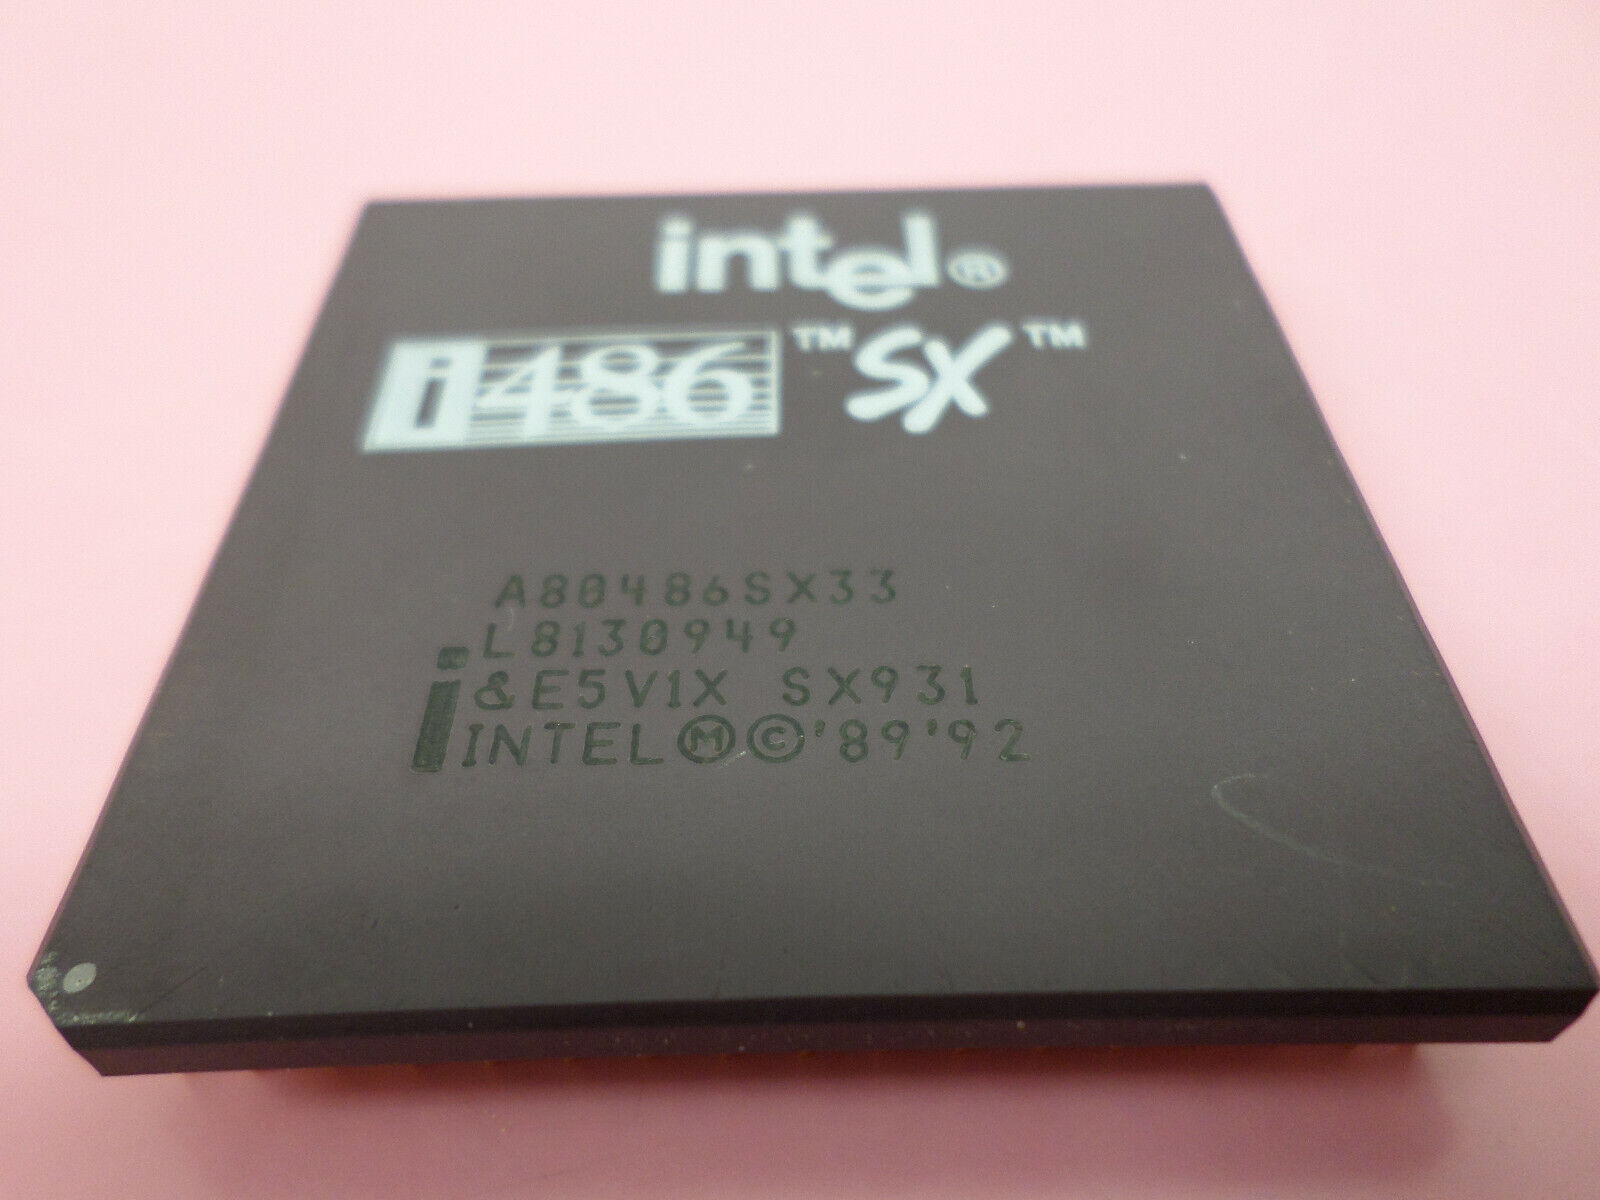 Vintage Intel i486DX2 A80486SX33 RARE SX931 89'92  Rare Ceramic GOLD Processor 